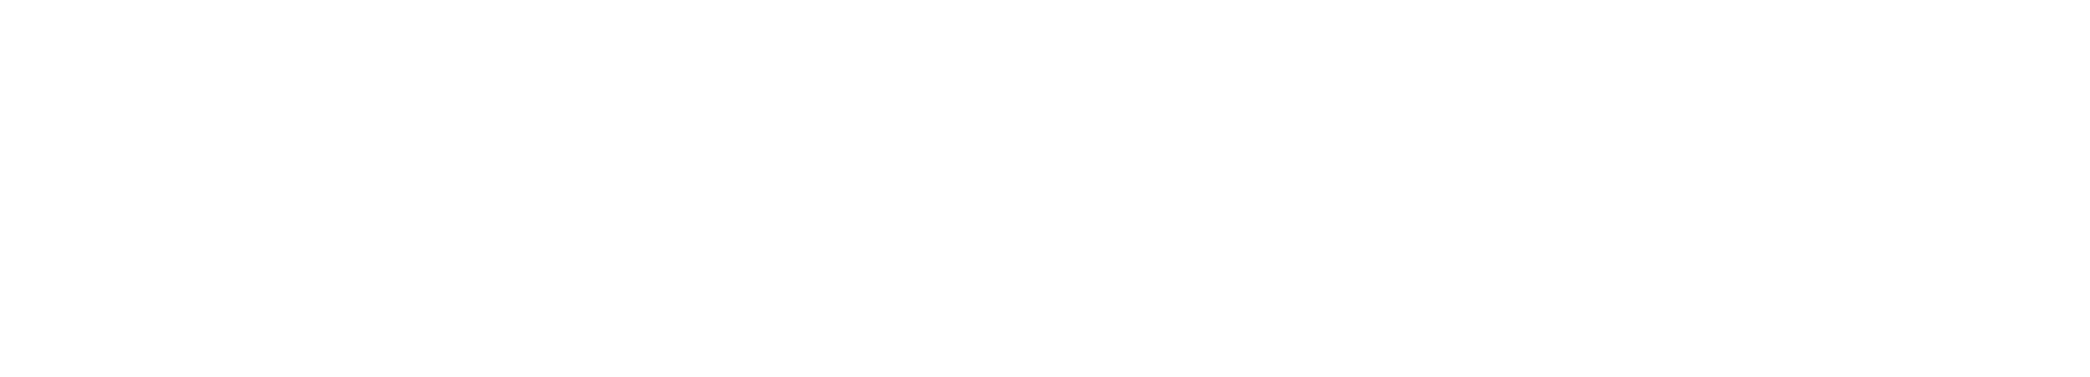 Commerce360 logo